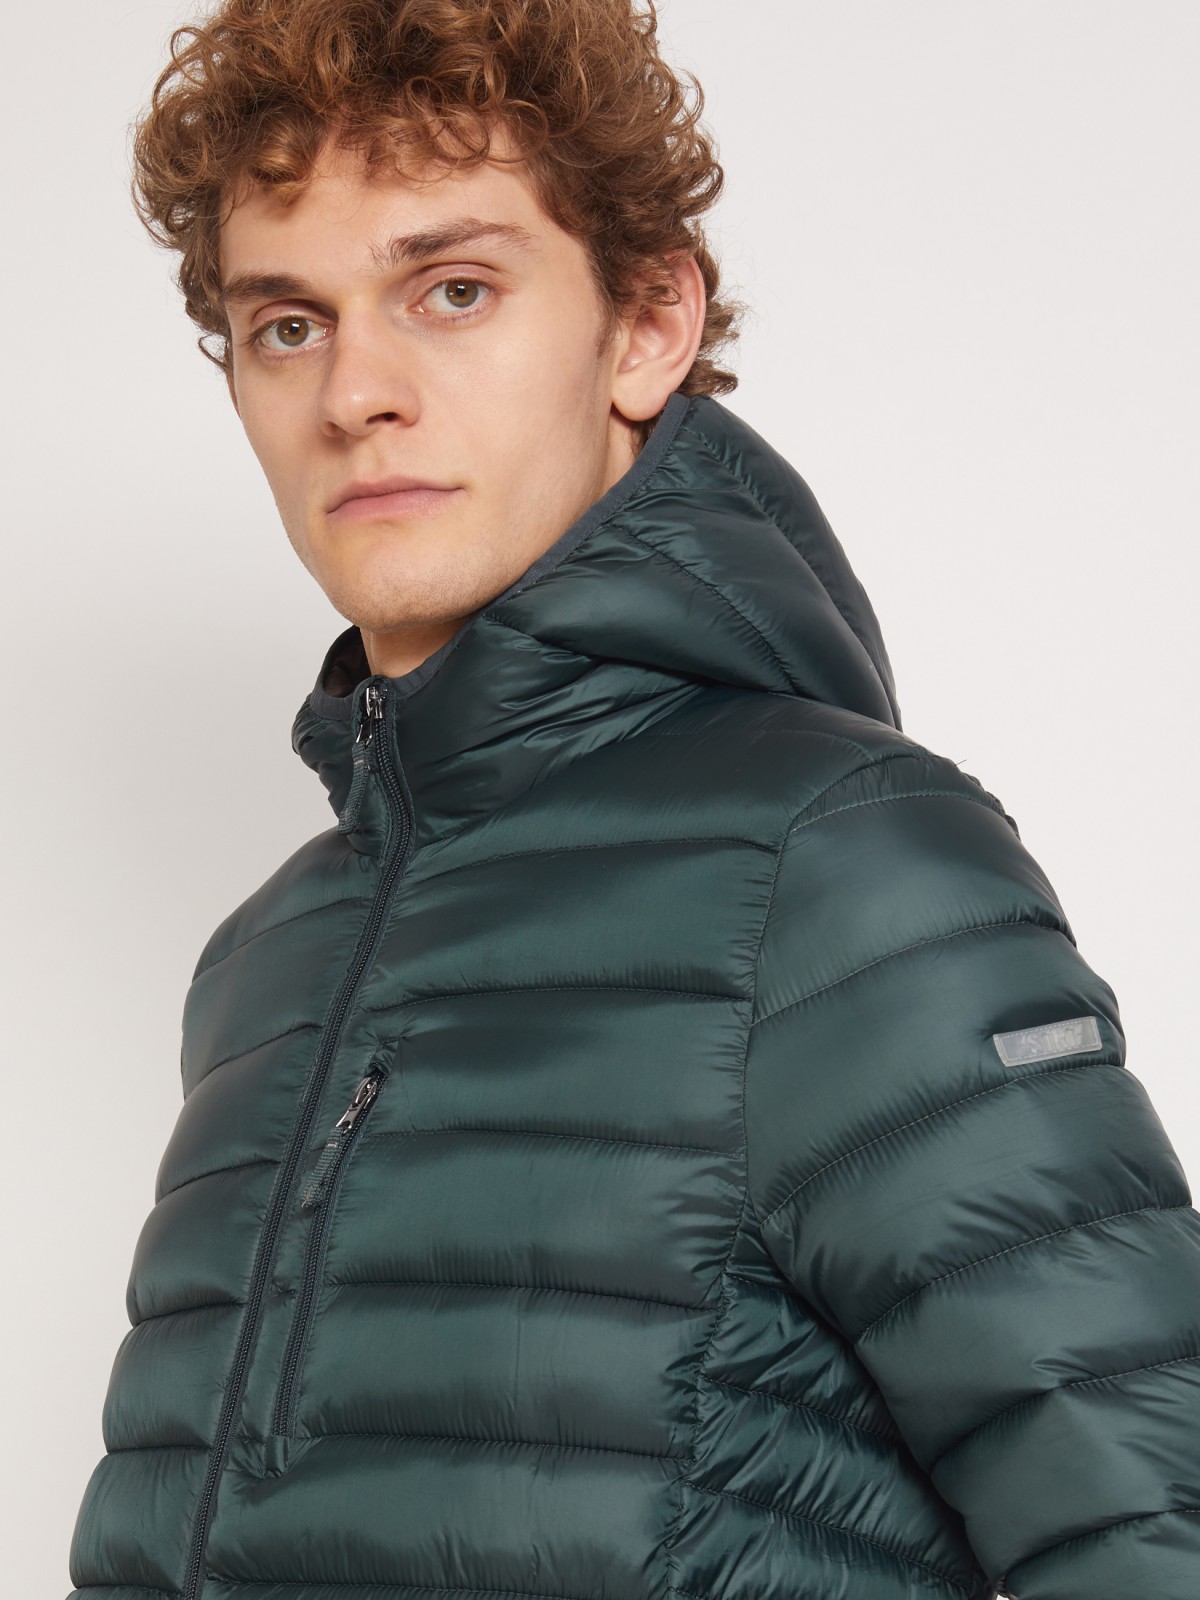 Ультралёгкая стёганая куртка с капюшоном zolla 011335114224, цвет темно-зеленый, размер XS - фото 4